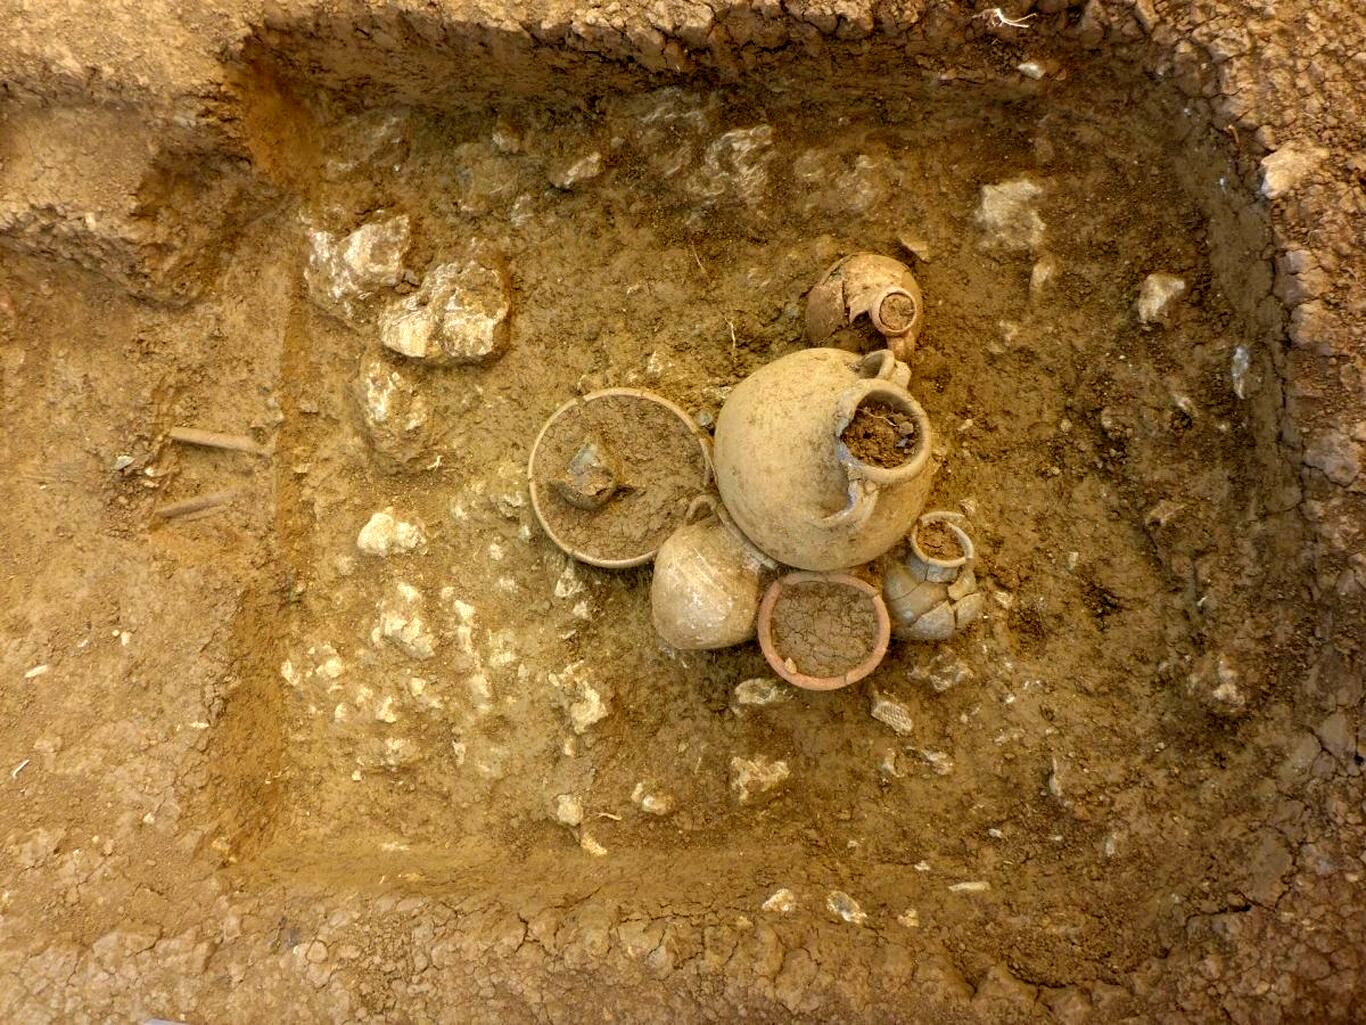 کشف یک گورستان باستانی در شمال شرقی فرانسه